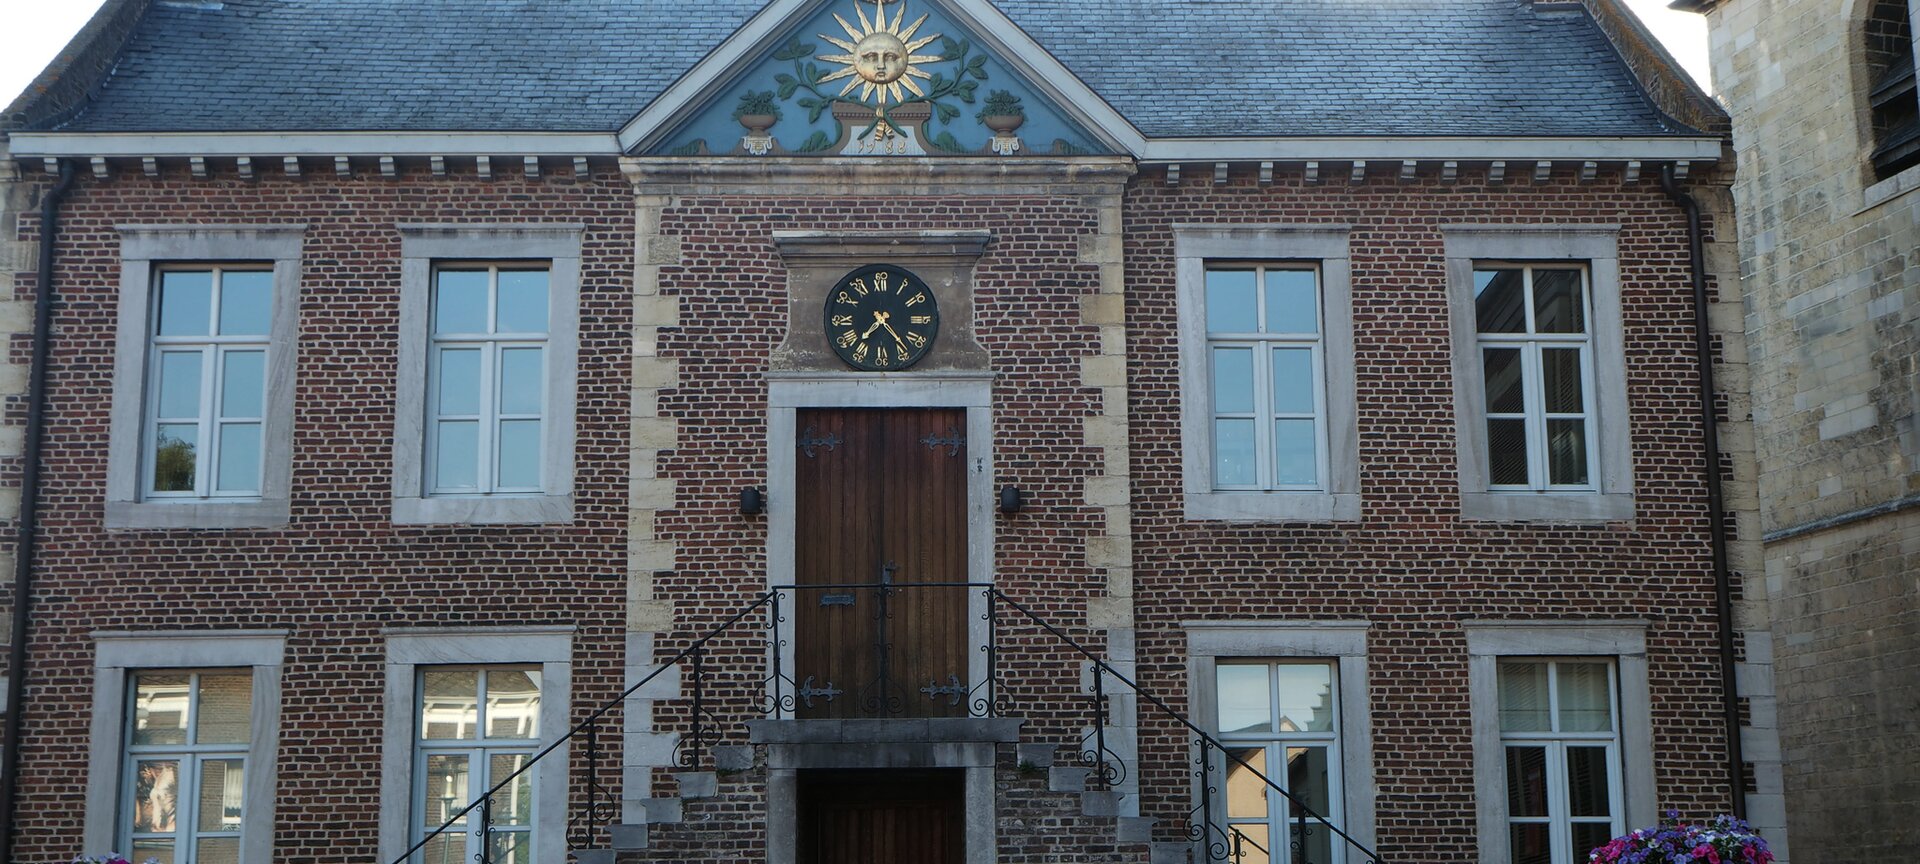 Historische rondleiding door de dorpskern van Zonhoven - Gemeentehuis Zonhoven